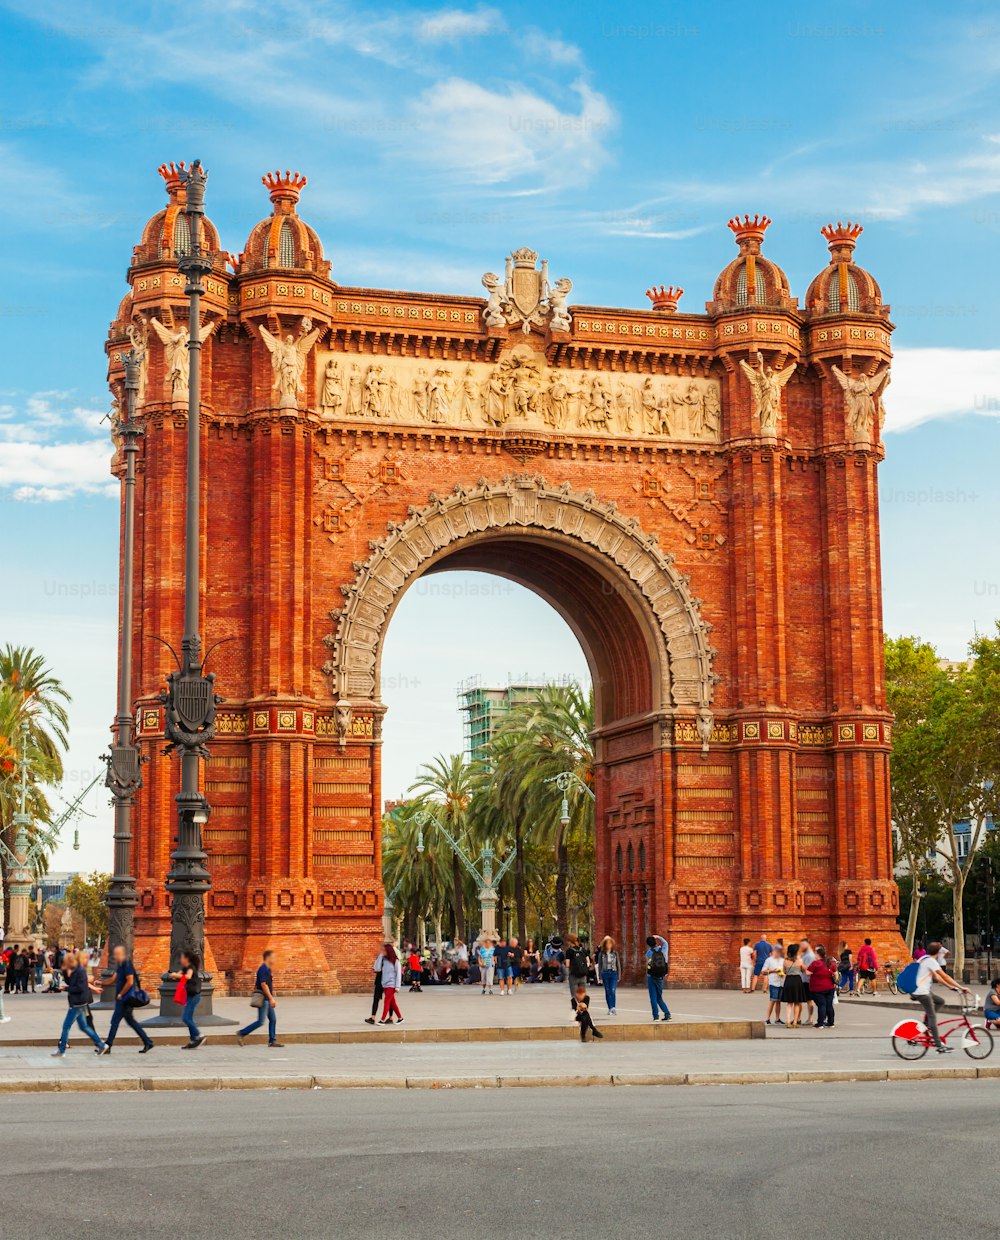 凱旋門または凱旋門は、スペインのカタルーニャ地方のバルセロナ市にある凱旋門�です